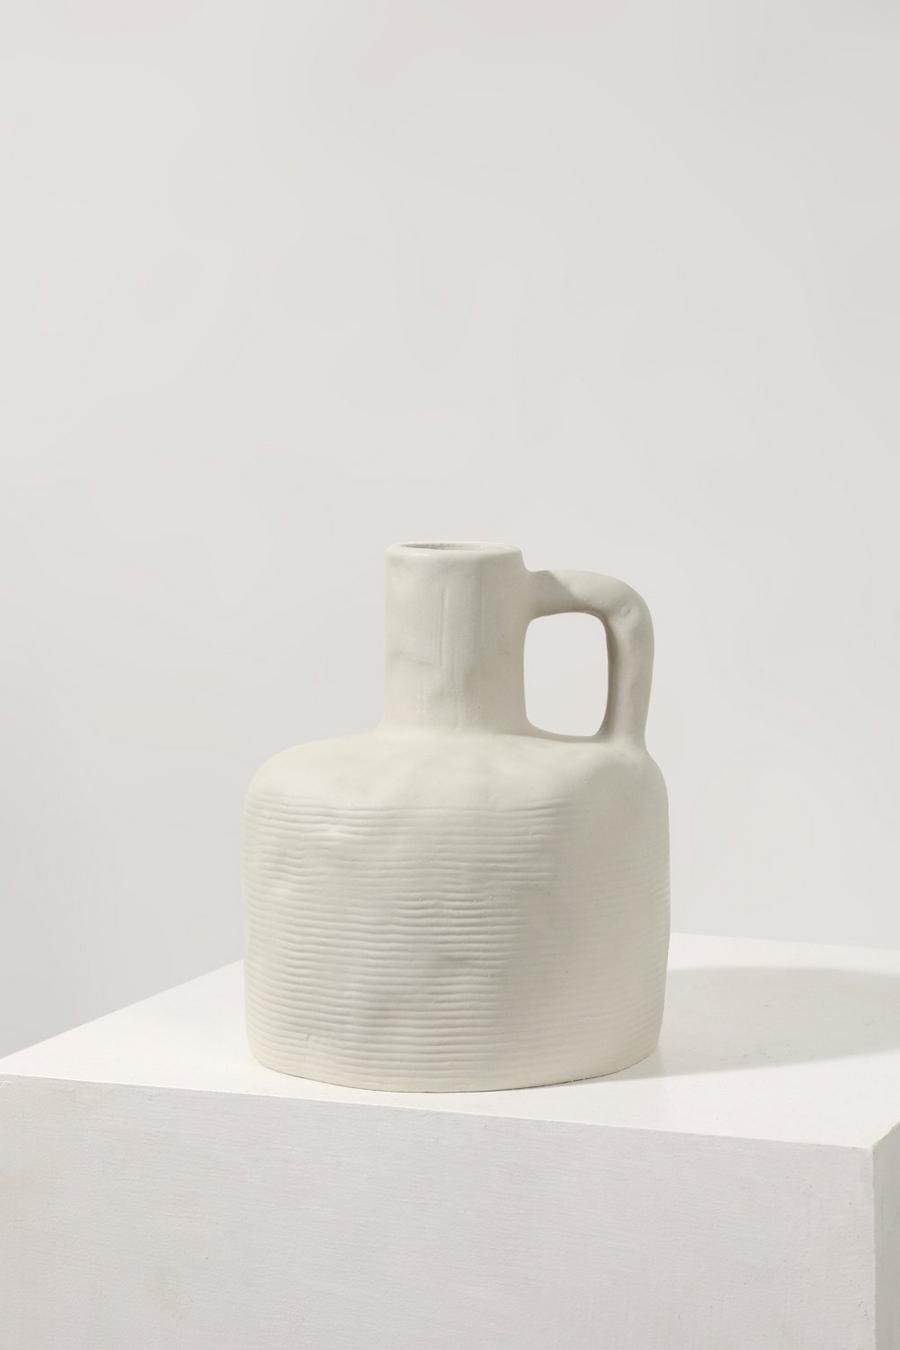 Vase texturé style carafe, White blanc